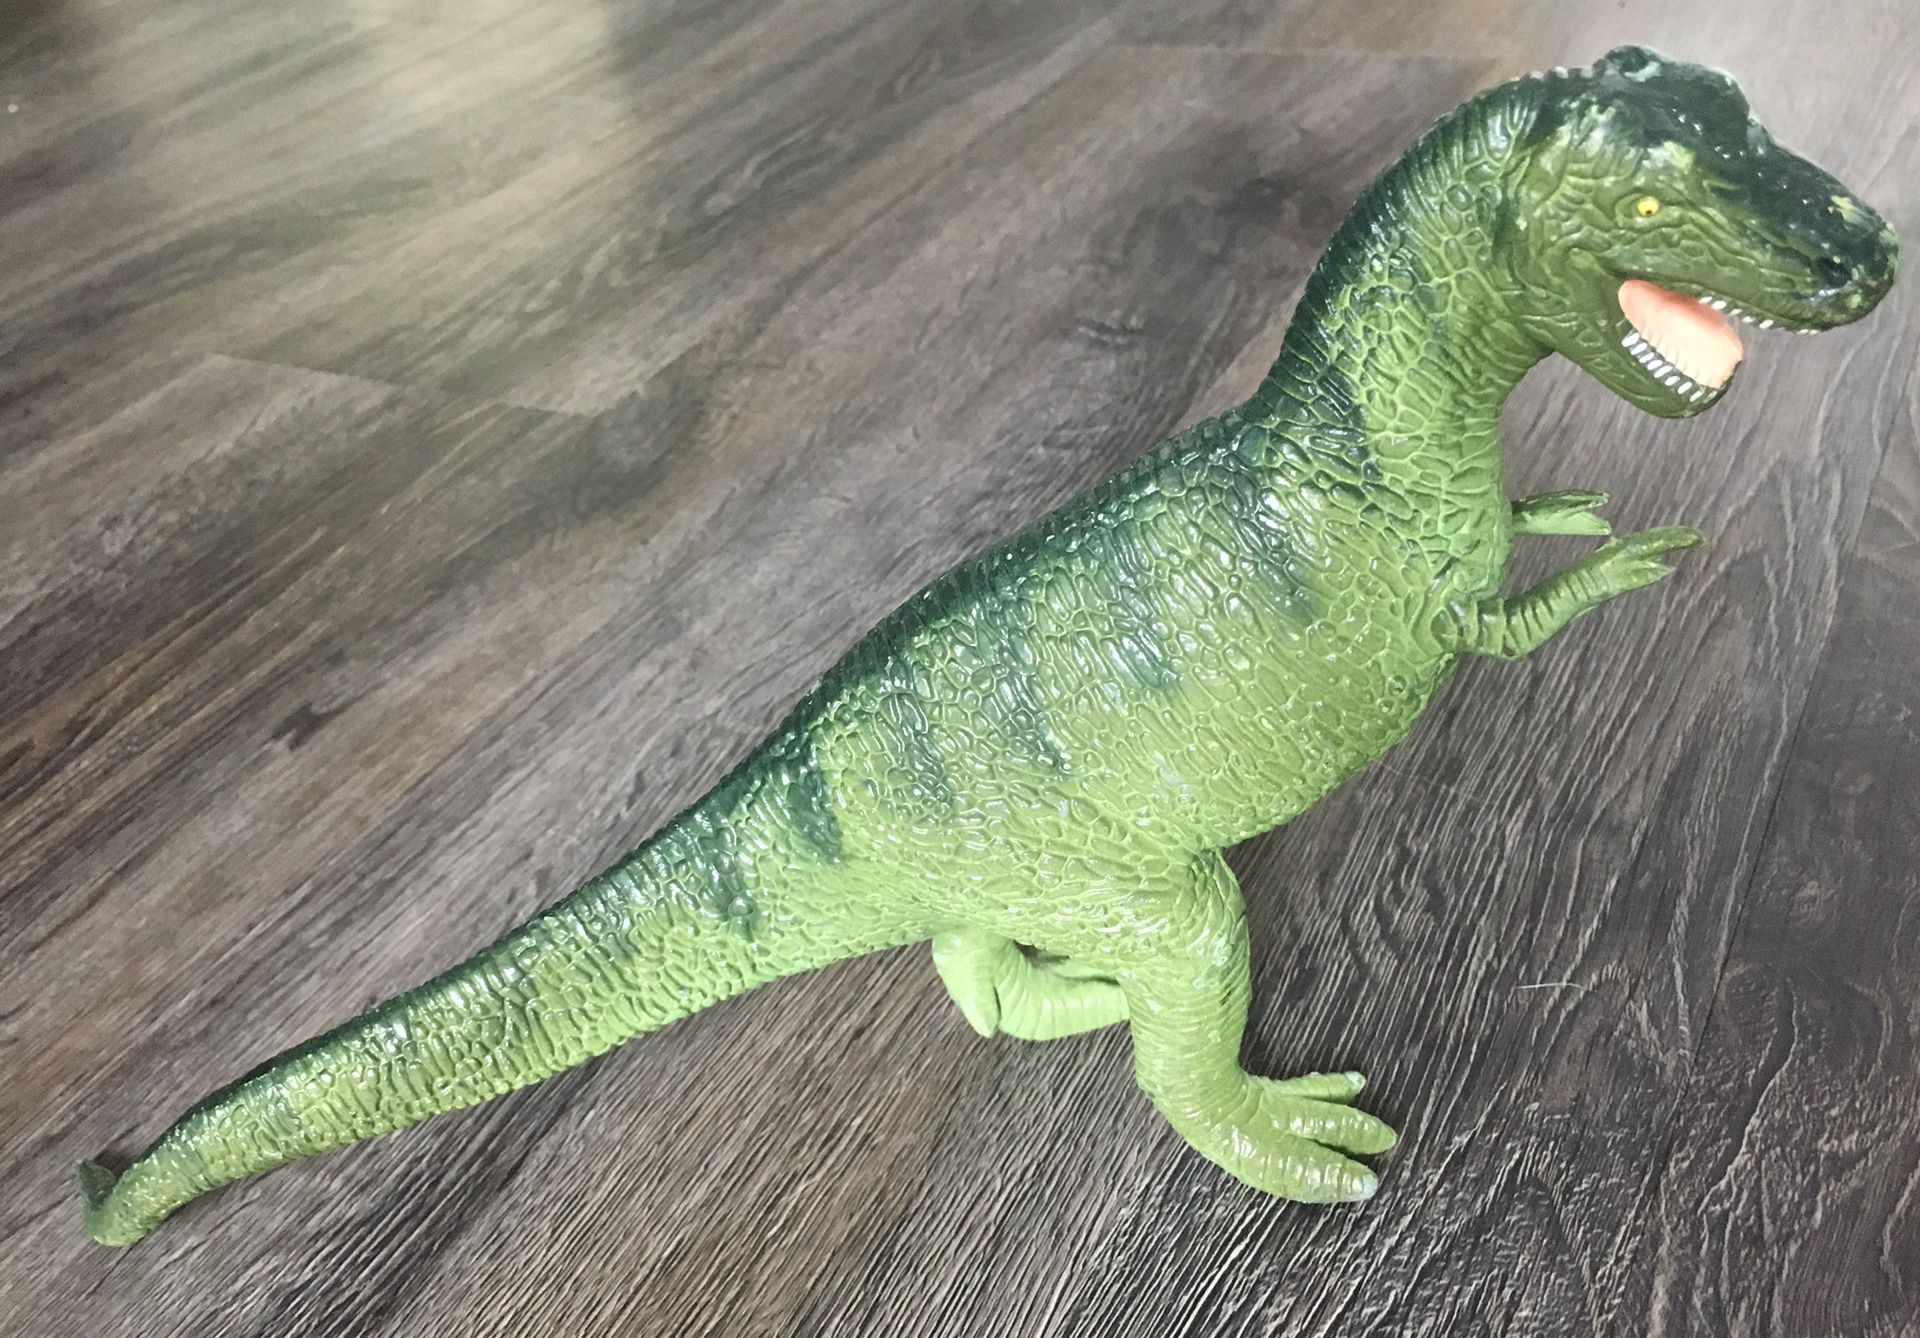 1988 Dinosaur Vintage Action Figure T Rex Tyrannosaurus Toy